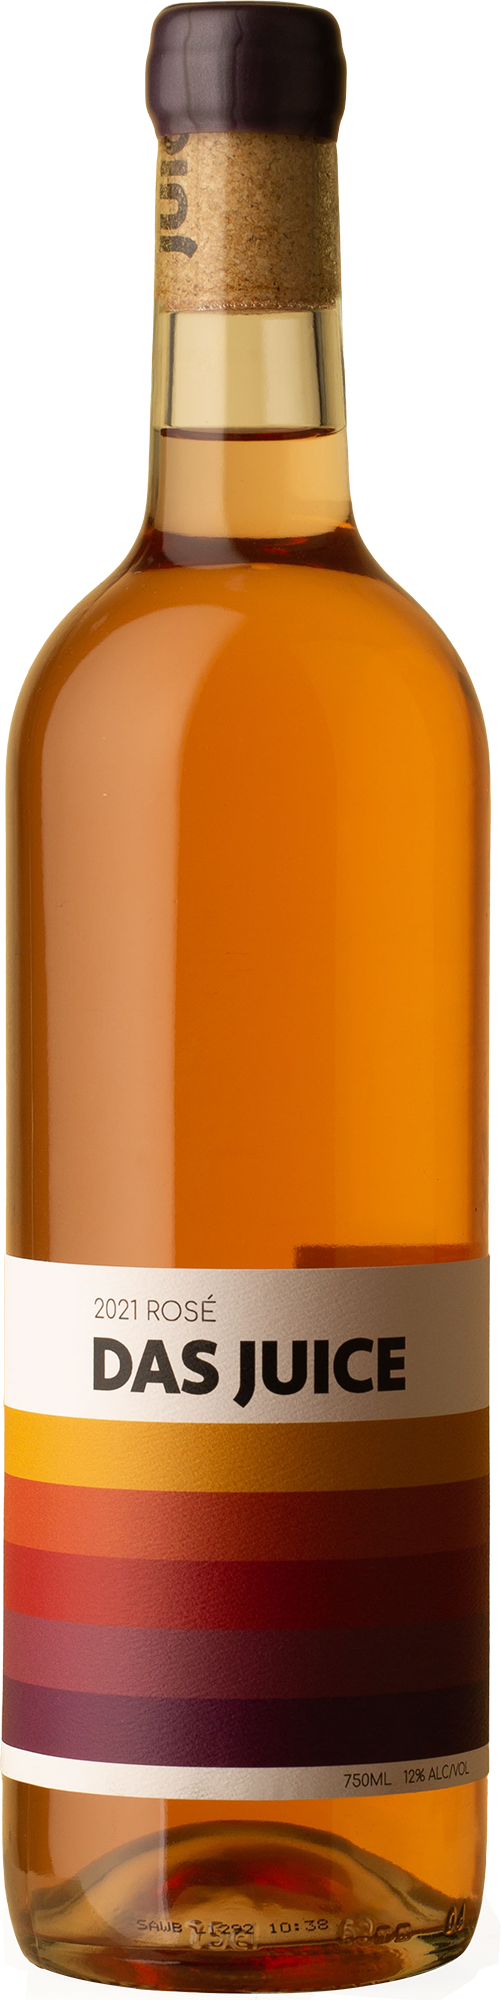 Das Juice - Rosé 2021 Rosé